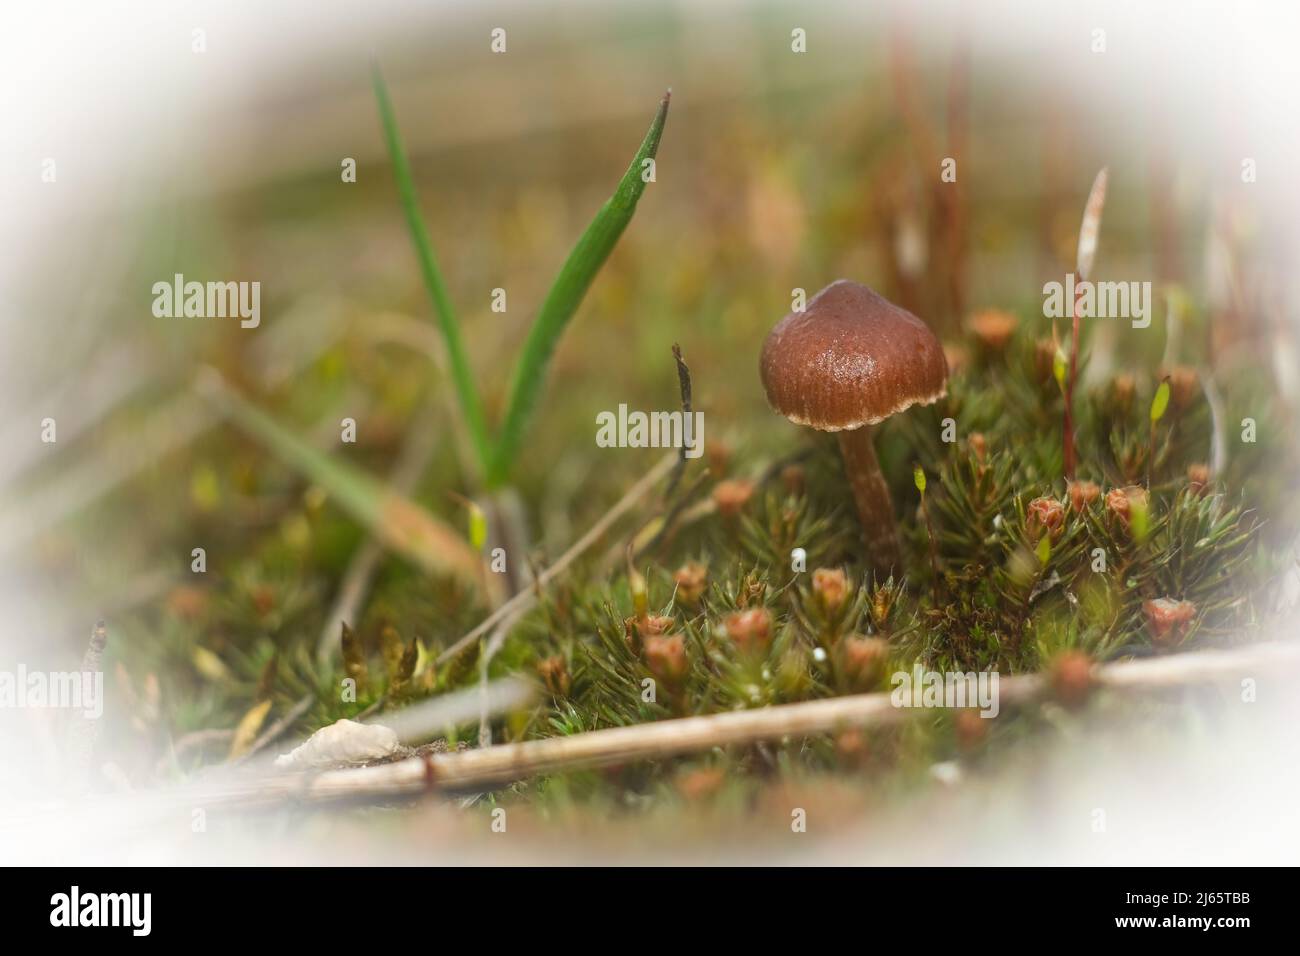 Macro world of moss and mushrooms. Stock Photo